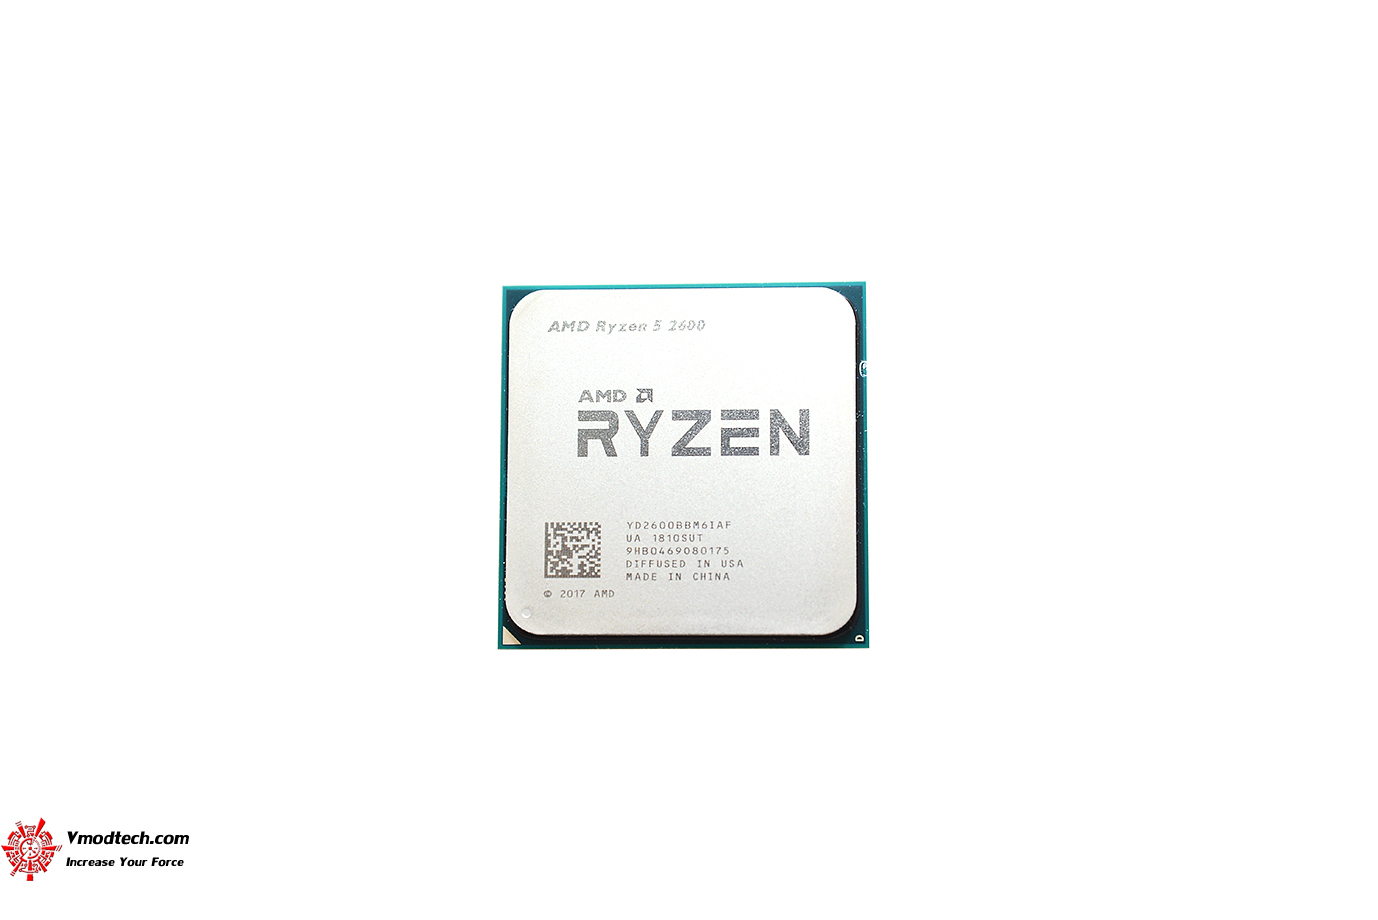 dsc 2407 AMD RYZEN 5 2600 PROCESSOR REVIEW